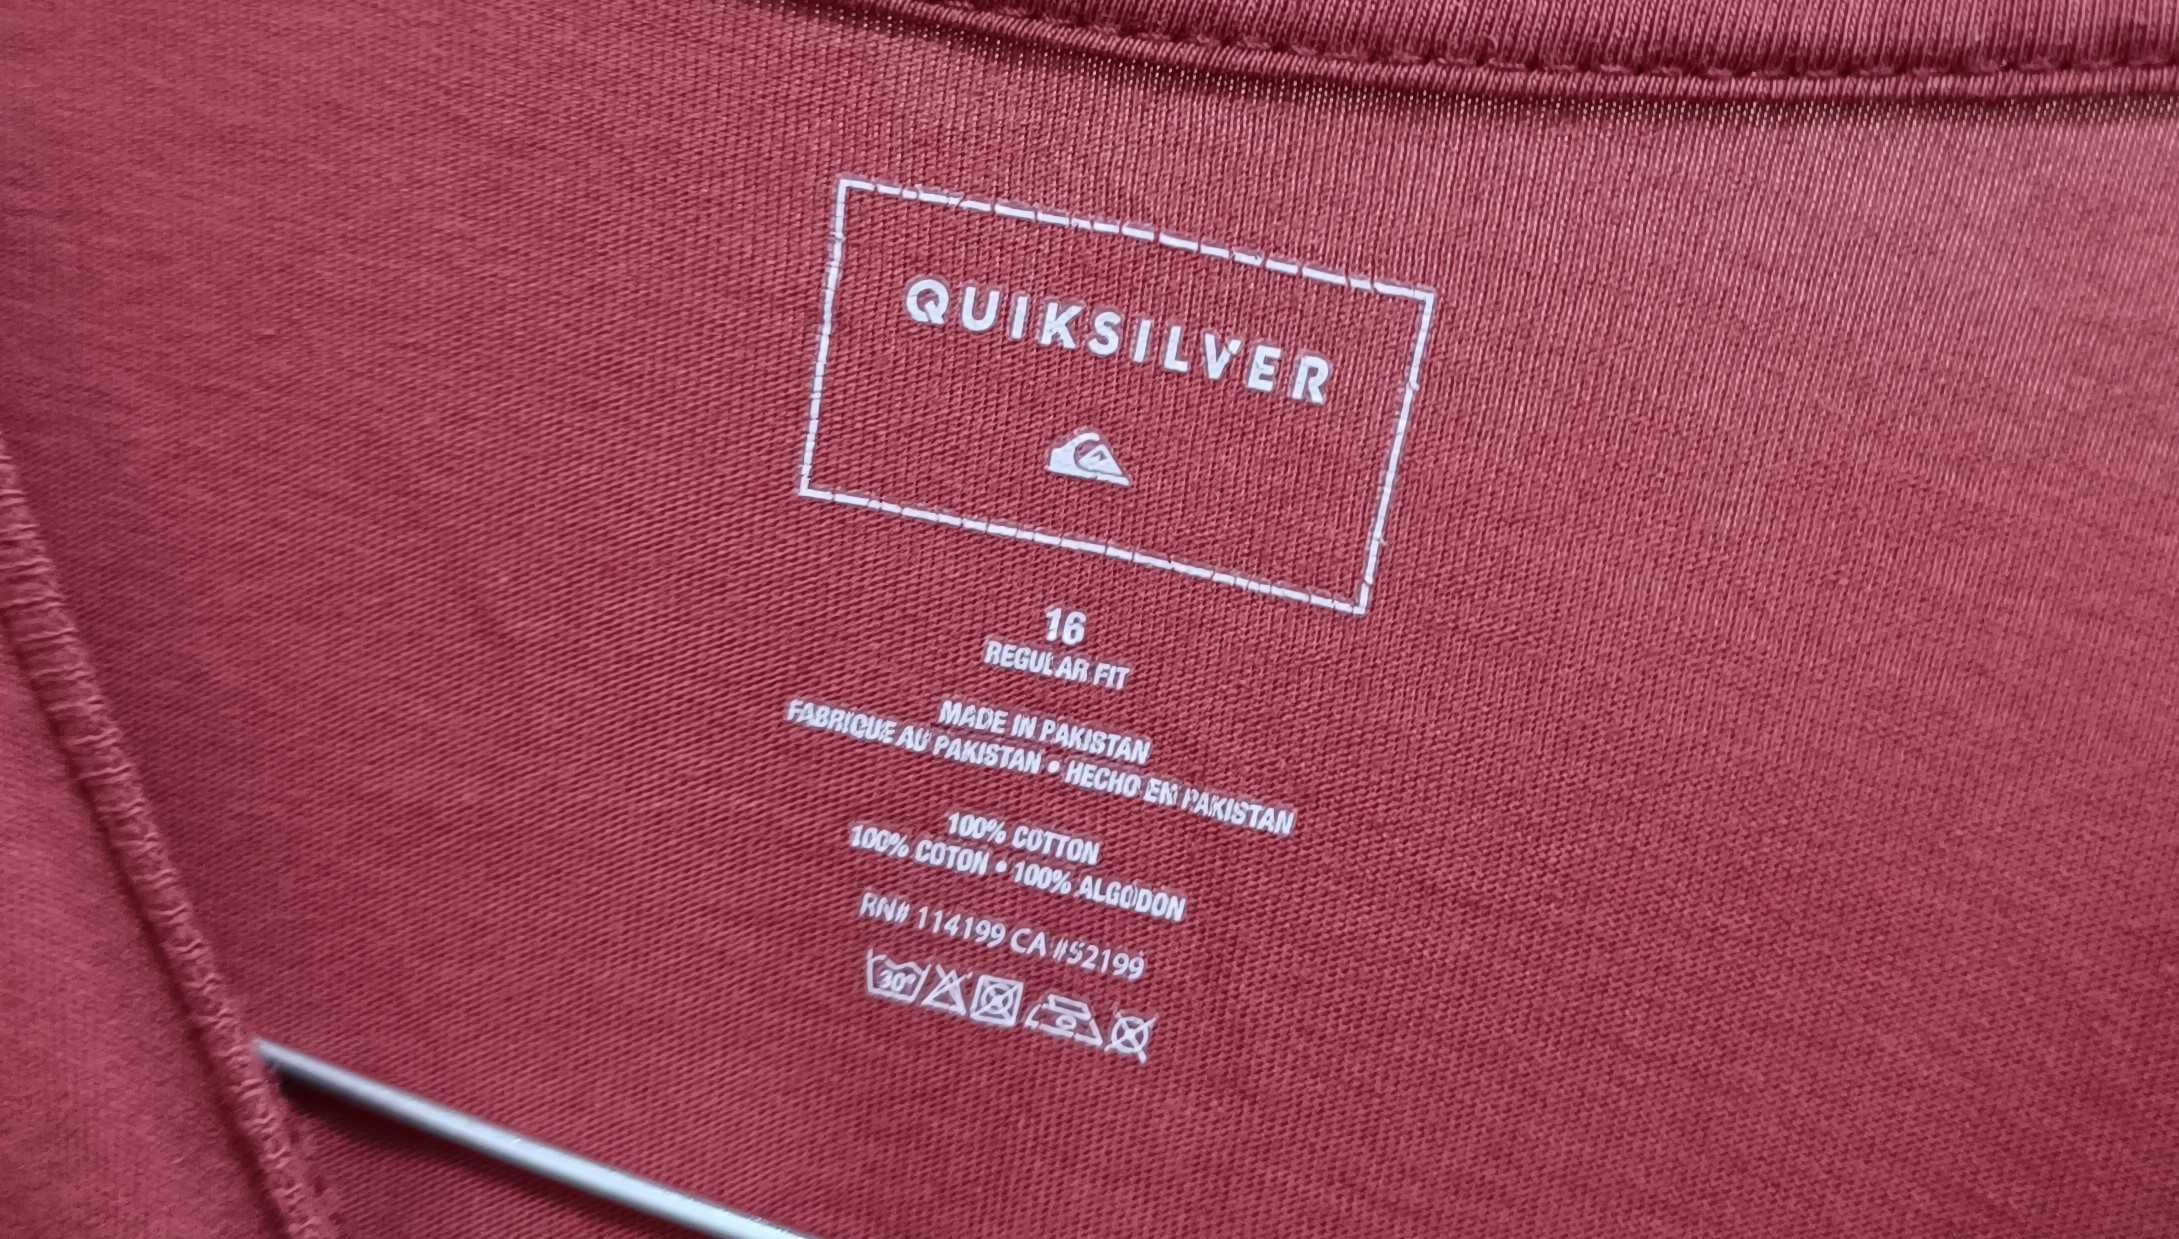 Quiksilver-Regular fit-16